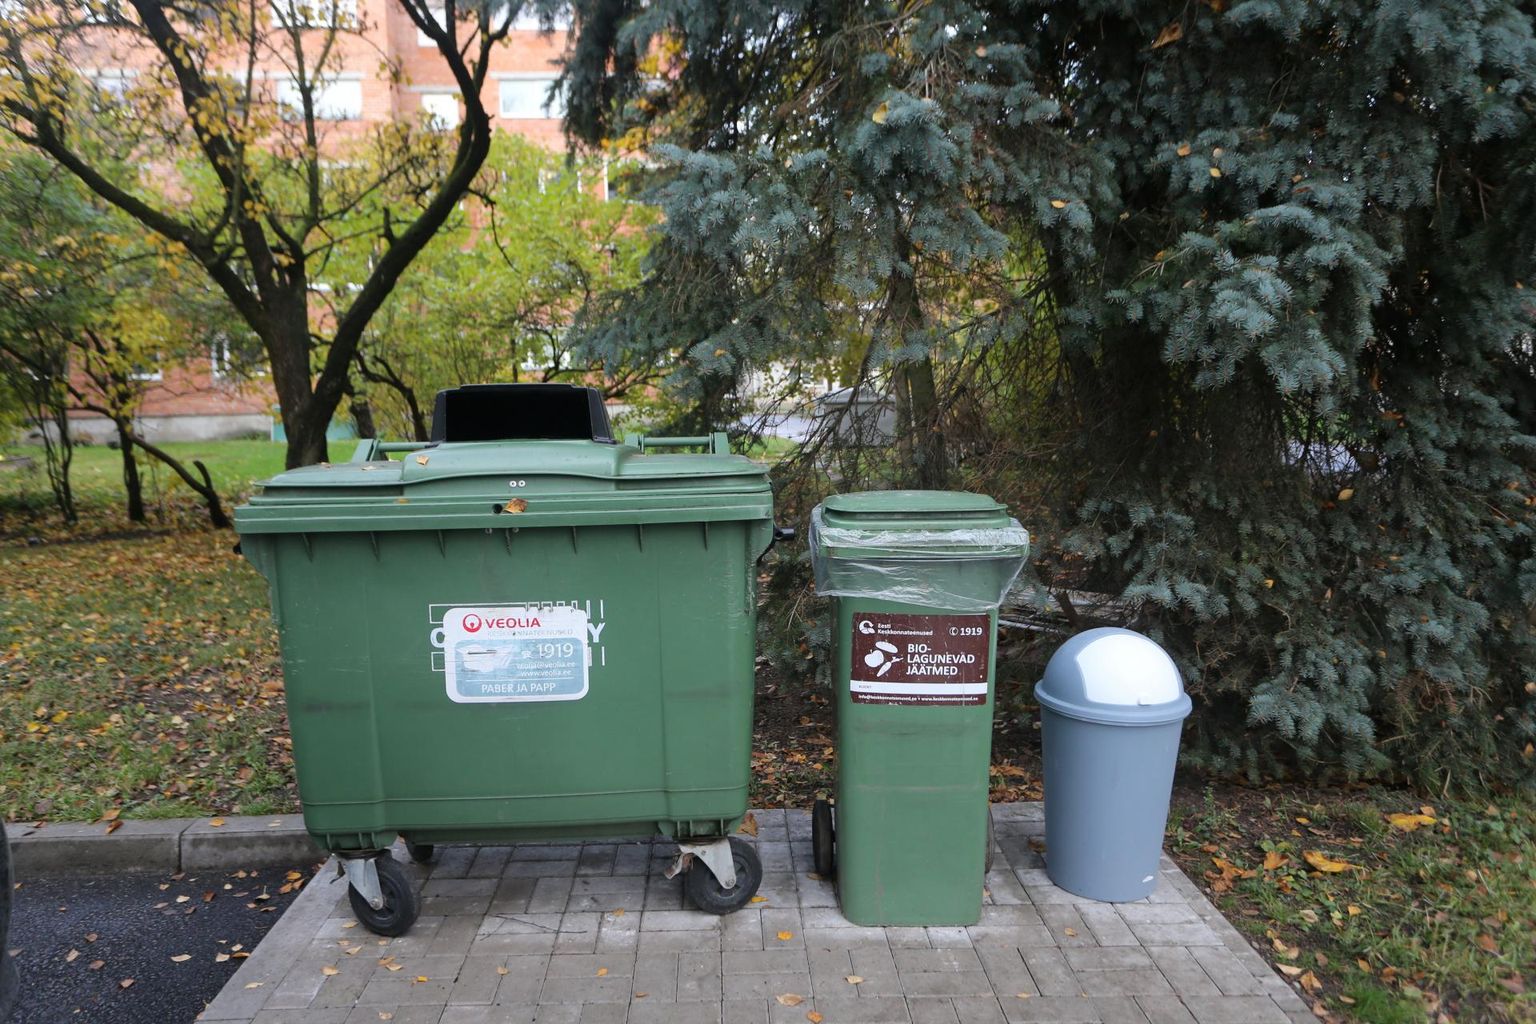 Tartus saab korraldatud jäätmeveoga kodude juures ära anda segaolmejäätmeid, vanapaberit ja biojäätmeid. Suurjäätmetest ja pakenditest lahtisaamisega peab igaüks ise tegelema.